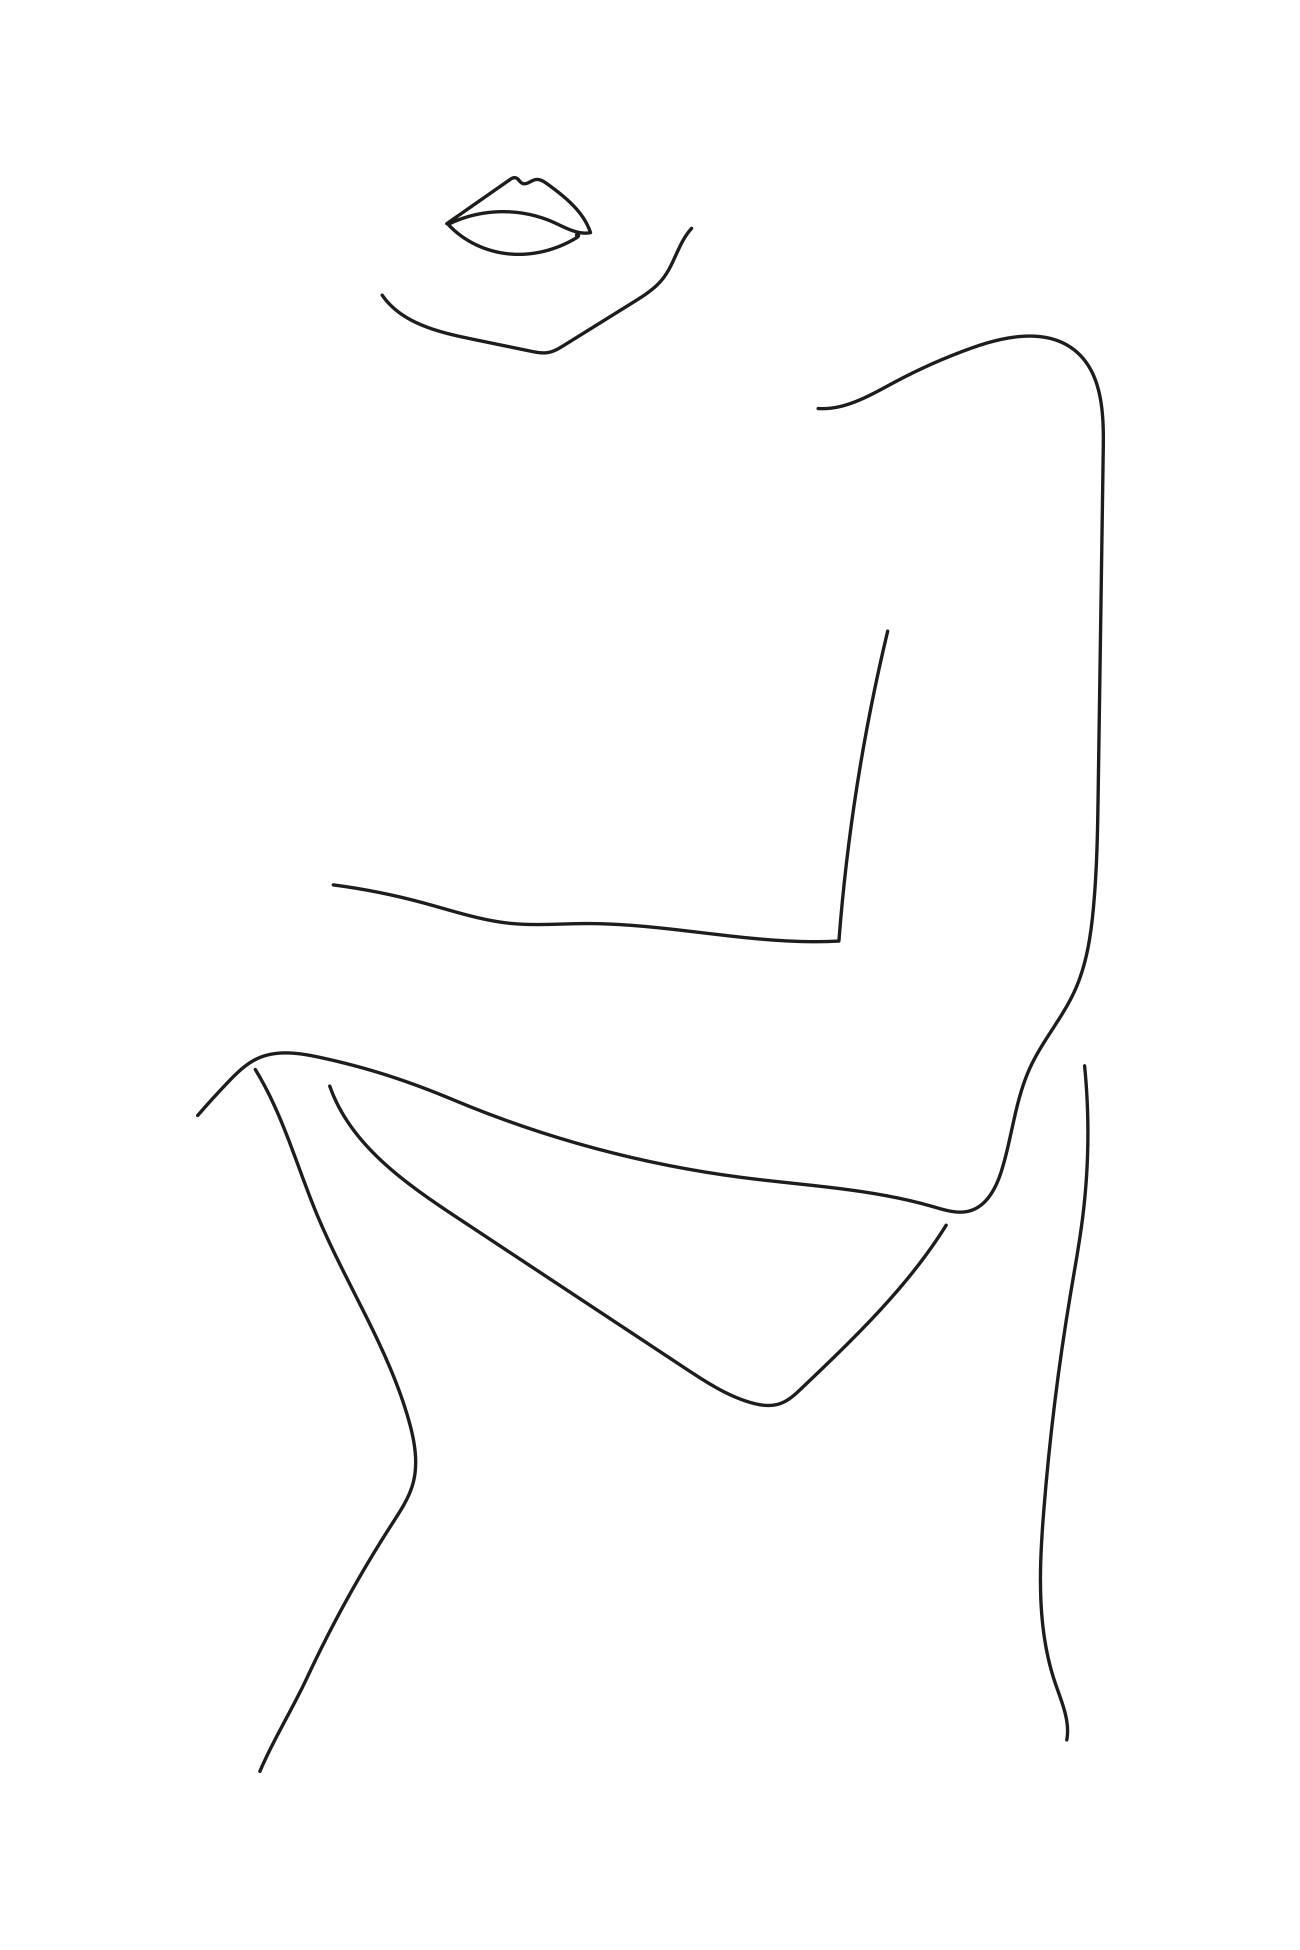 Simple Line Body Drawings Dibujos Tumblr Body Drawings Cuerpo Dibujo